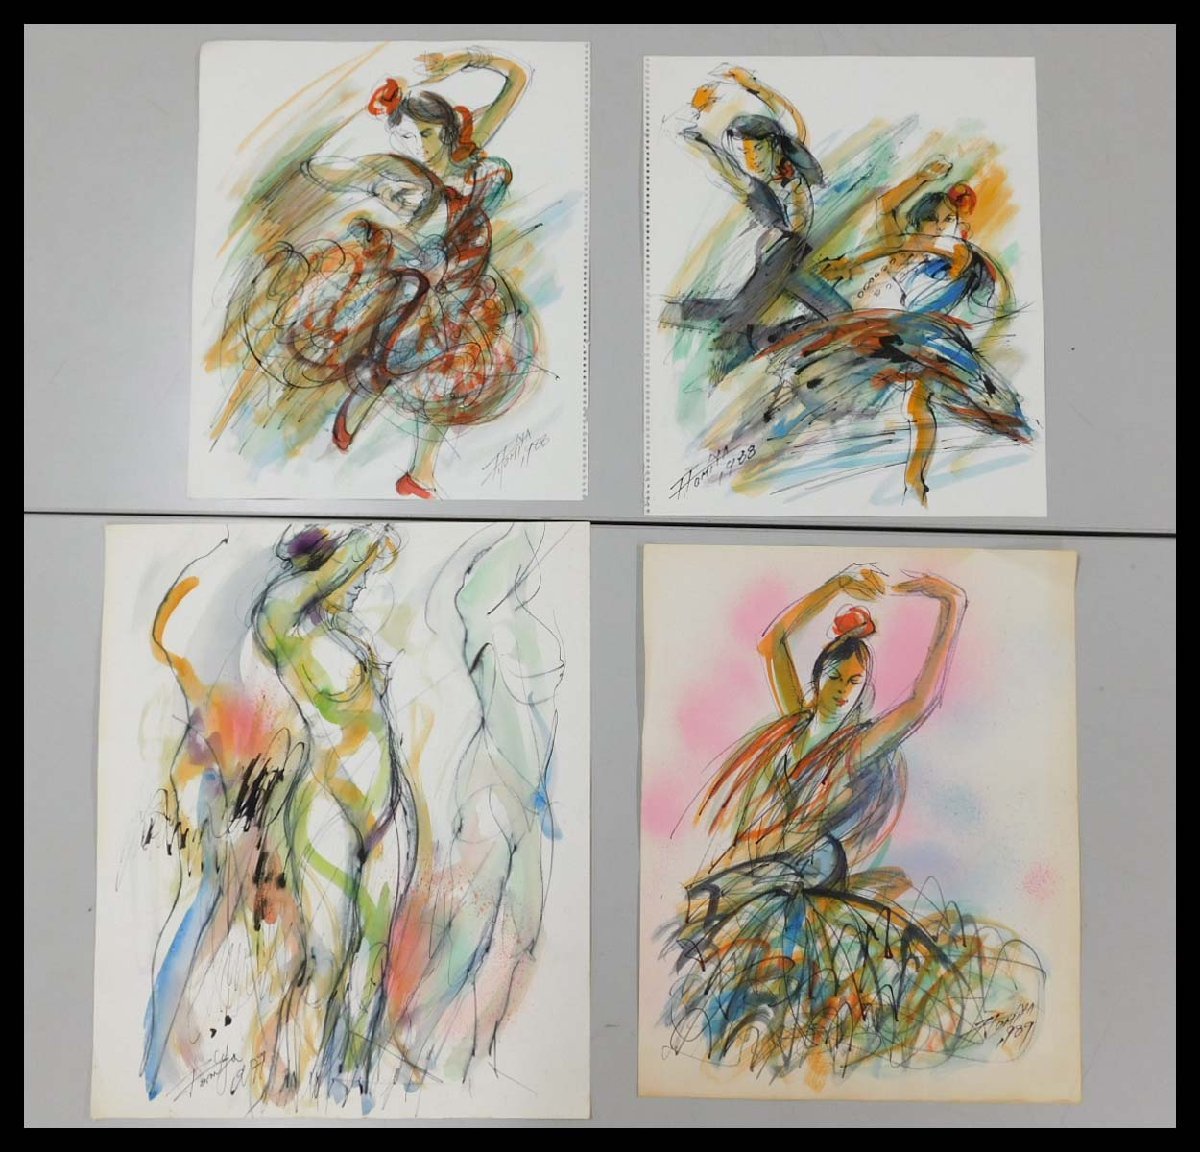 रयुसुके टोंगू महिला चित्र सुंदर महिला डांसर वॉटरकलर पेंटिंग 4 शीट केवल पेरिस अंतर्राष्ट्रीय कलाकार की ओर से अभिव्यक्ति चित्रकार ⑥w230647, कलाकृति, चित्रकारी, स्याही पेंटिंग